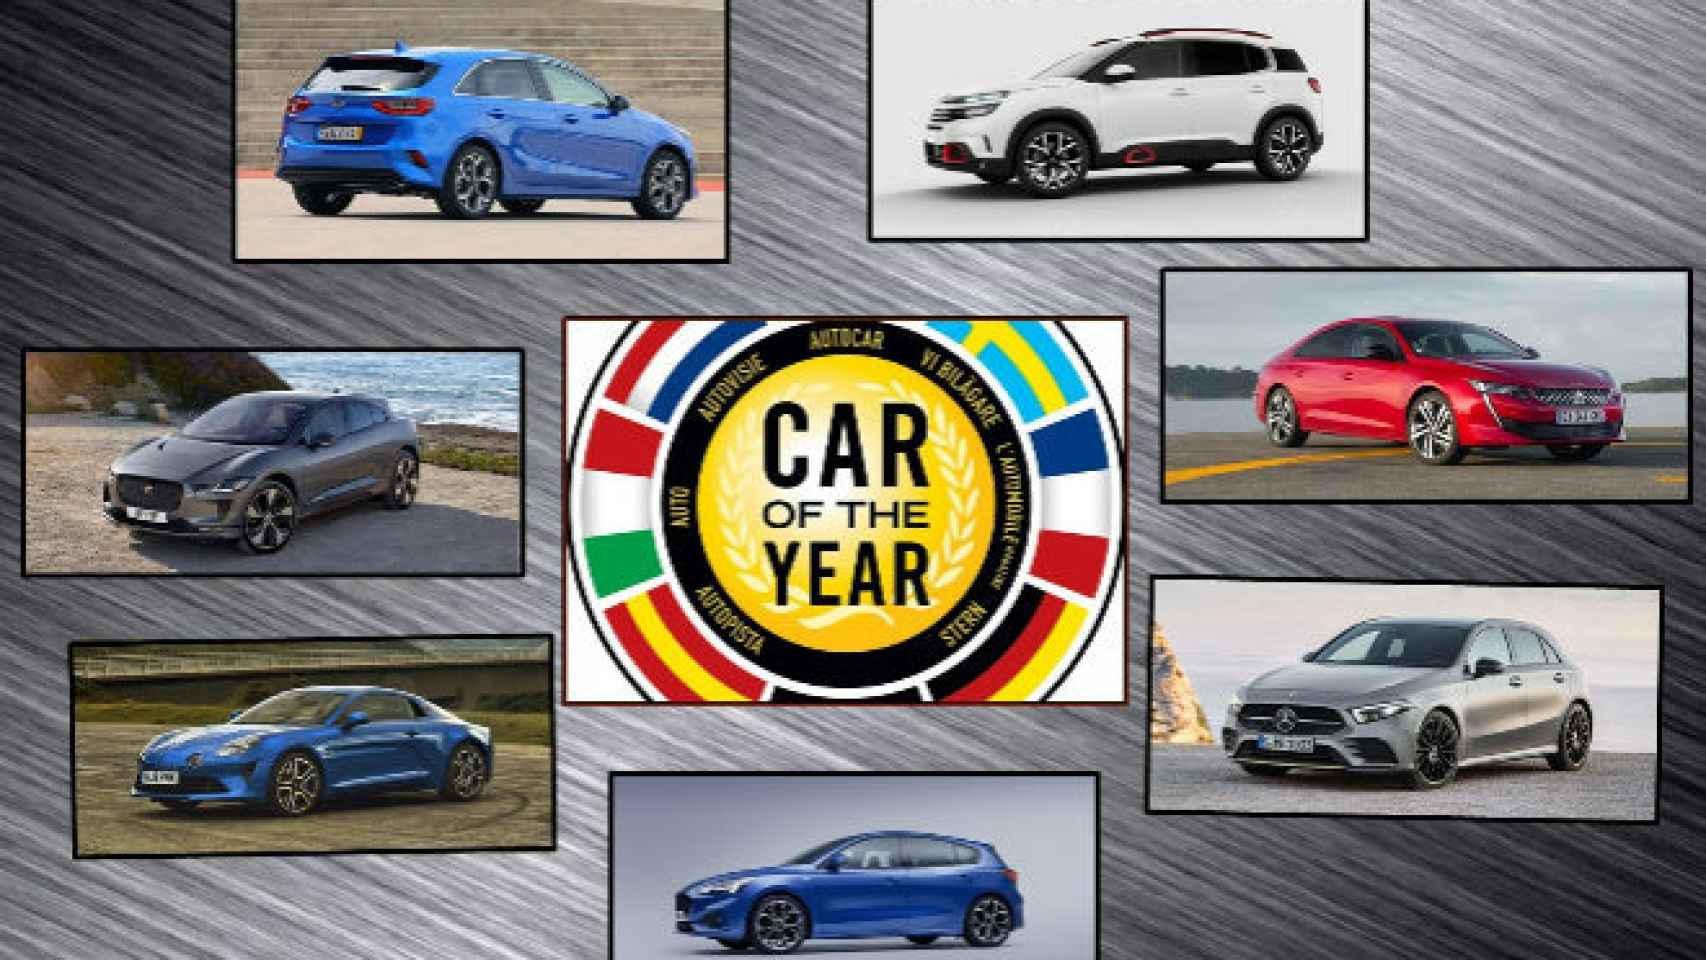 Estos son los siete finalistas a coche del año 2019.